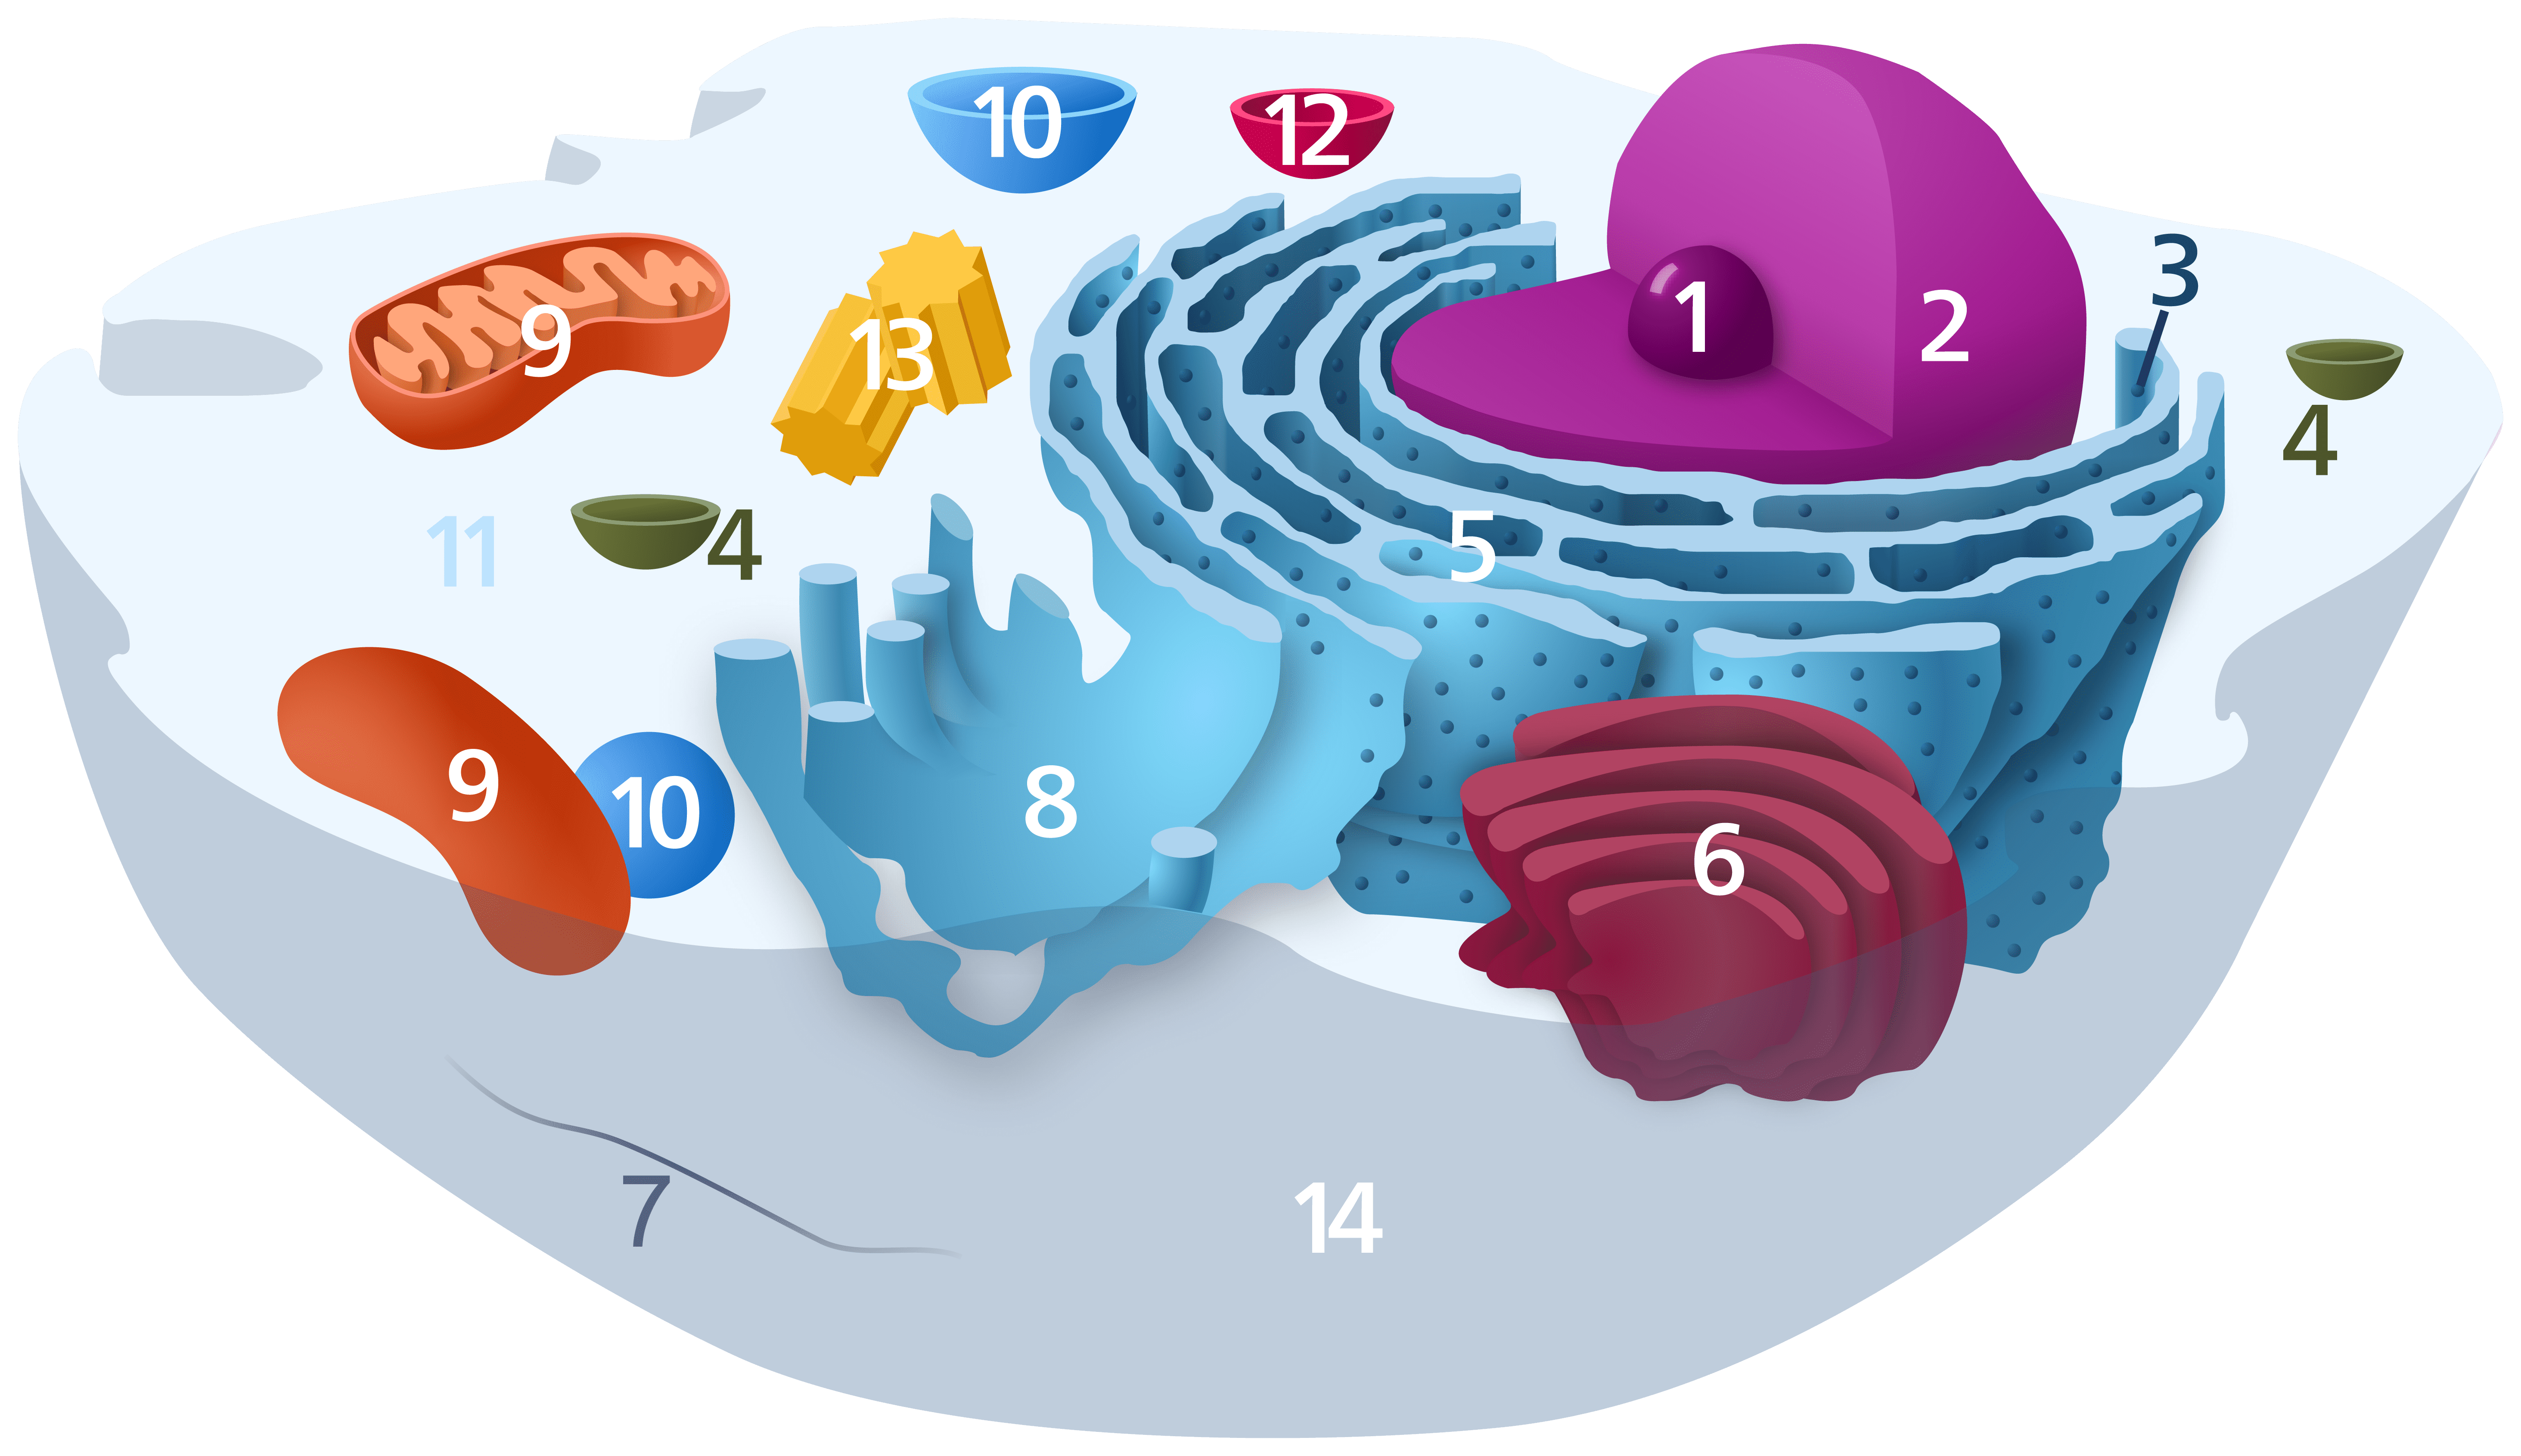 (그림1) 동물 세포의 내부 구조를 나타낸 그림. 다양한 세포 소기관을 볼 수 있다. 핵(1), 핵막(2), 리보솜(3), 소포(4), 거친면 소포체(5), 골지체(6), 세포 골격(7), 매끈면 소포체(8), 미토콘드리아(9), 액포(10), 세포질(11), 리소좀(12), 중심체(13), 세포막(14) 등이 나타나 있다. (그림 출처 : Kelvinsong / Wikimedia Commons)